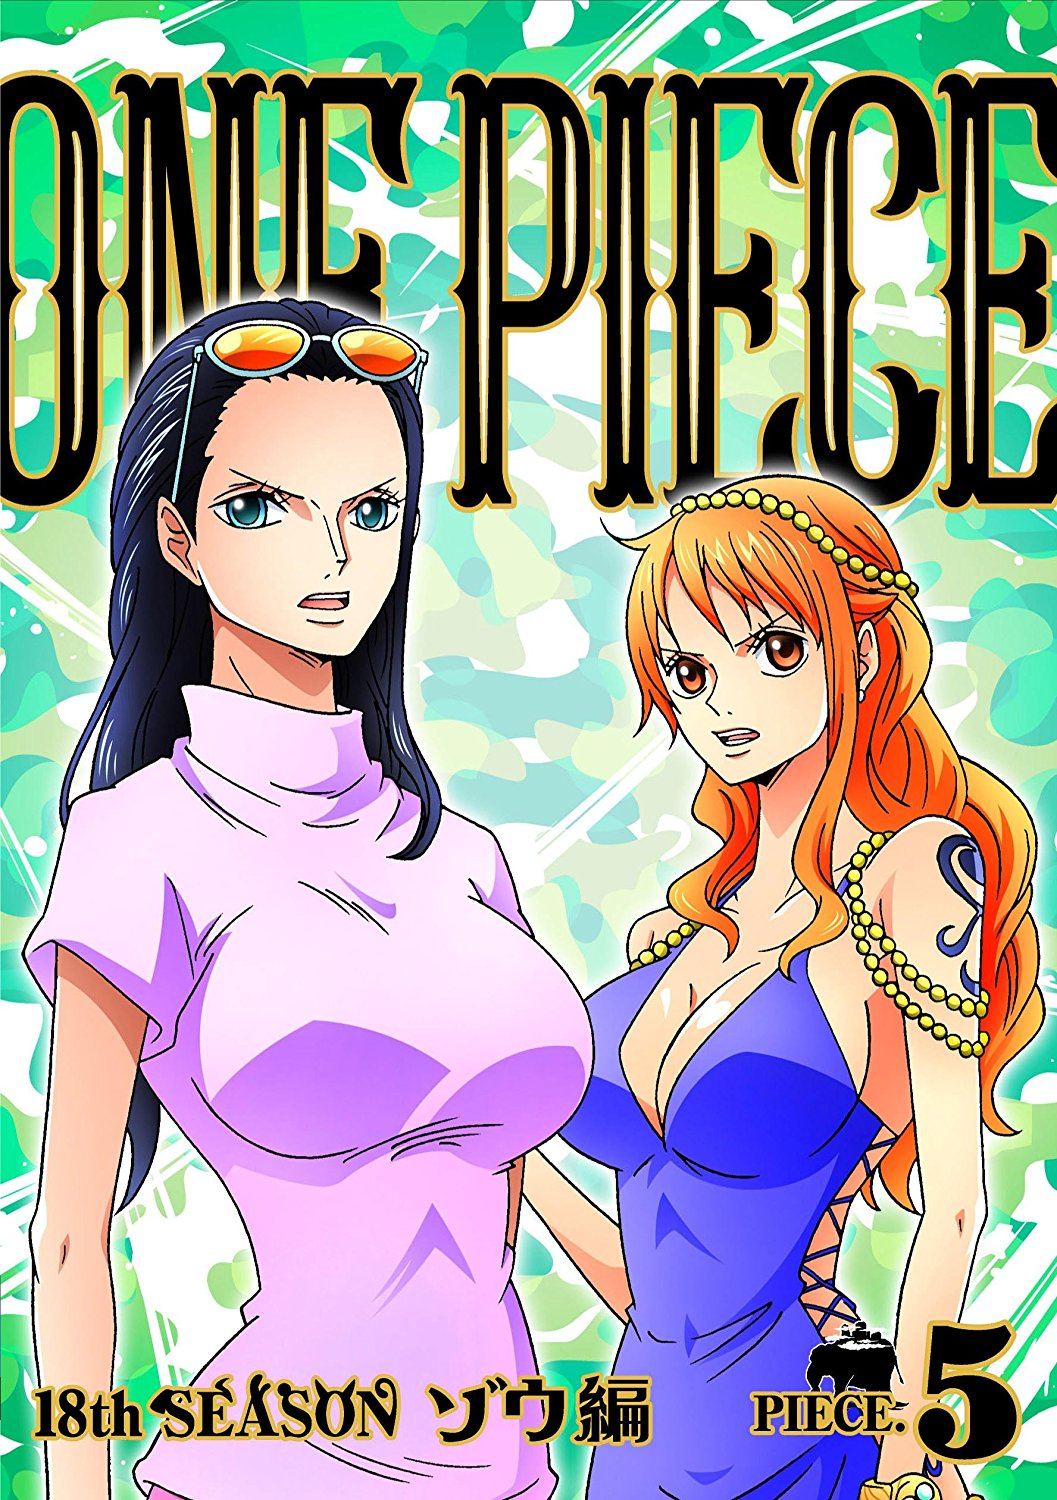 Nami - One Piece - Zou Arc, A